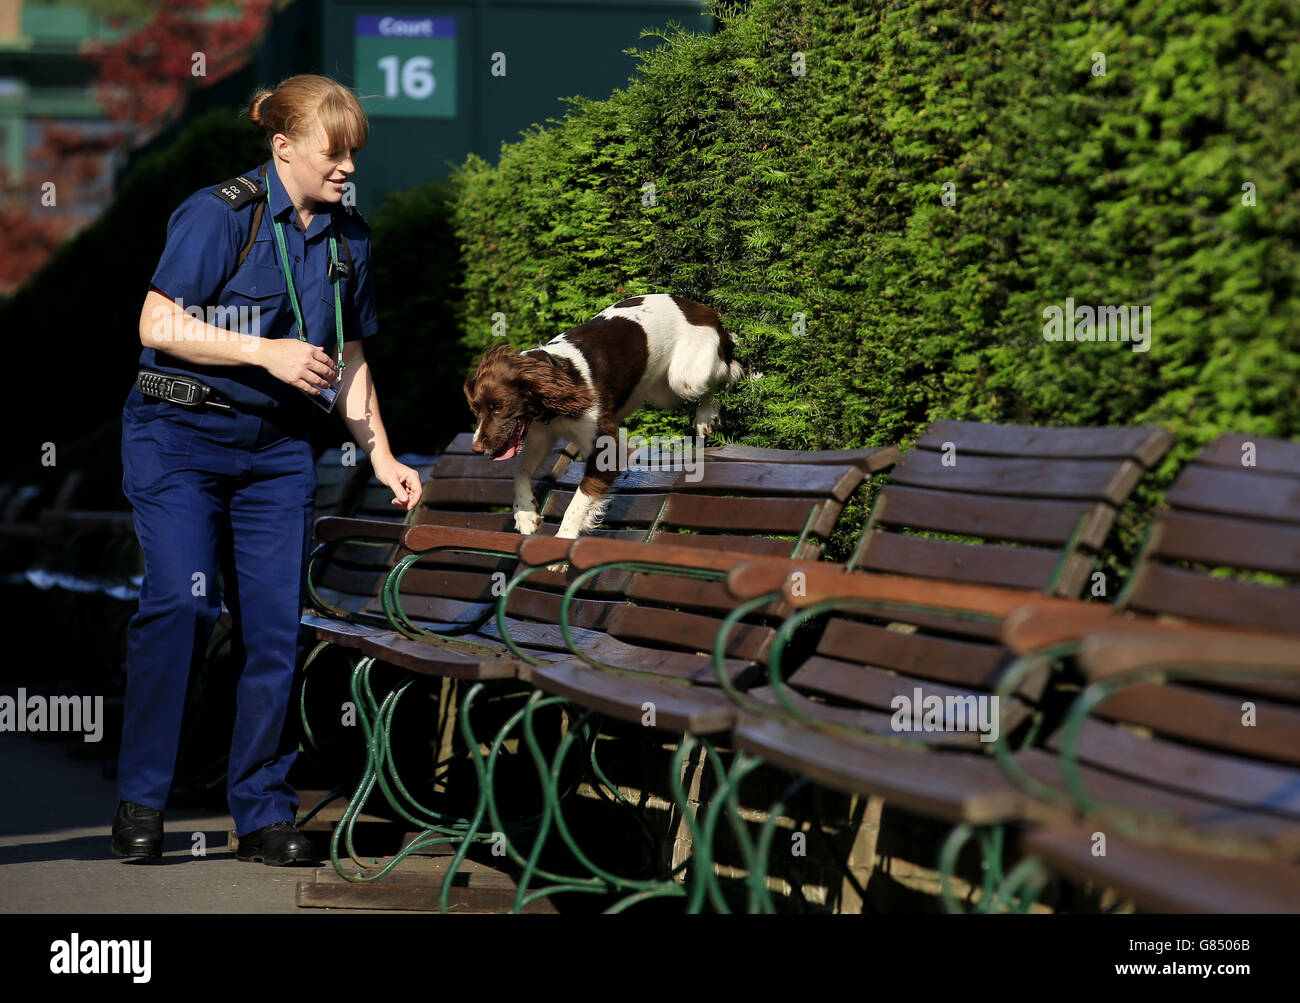 Un chien de police de détection d'explosifs travaille avec son maître par court 16 pendant le dixième jour des Championnats de Wimbledon au All England Lawn tennis and Croquet Club, Wimbledon. Banque D'Images